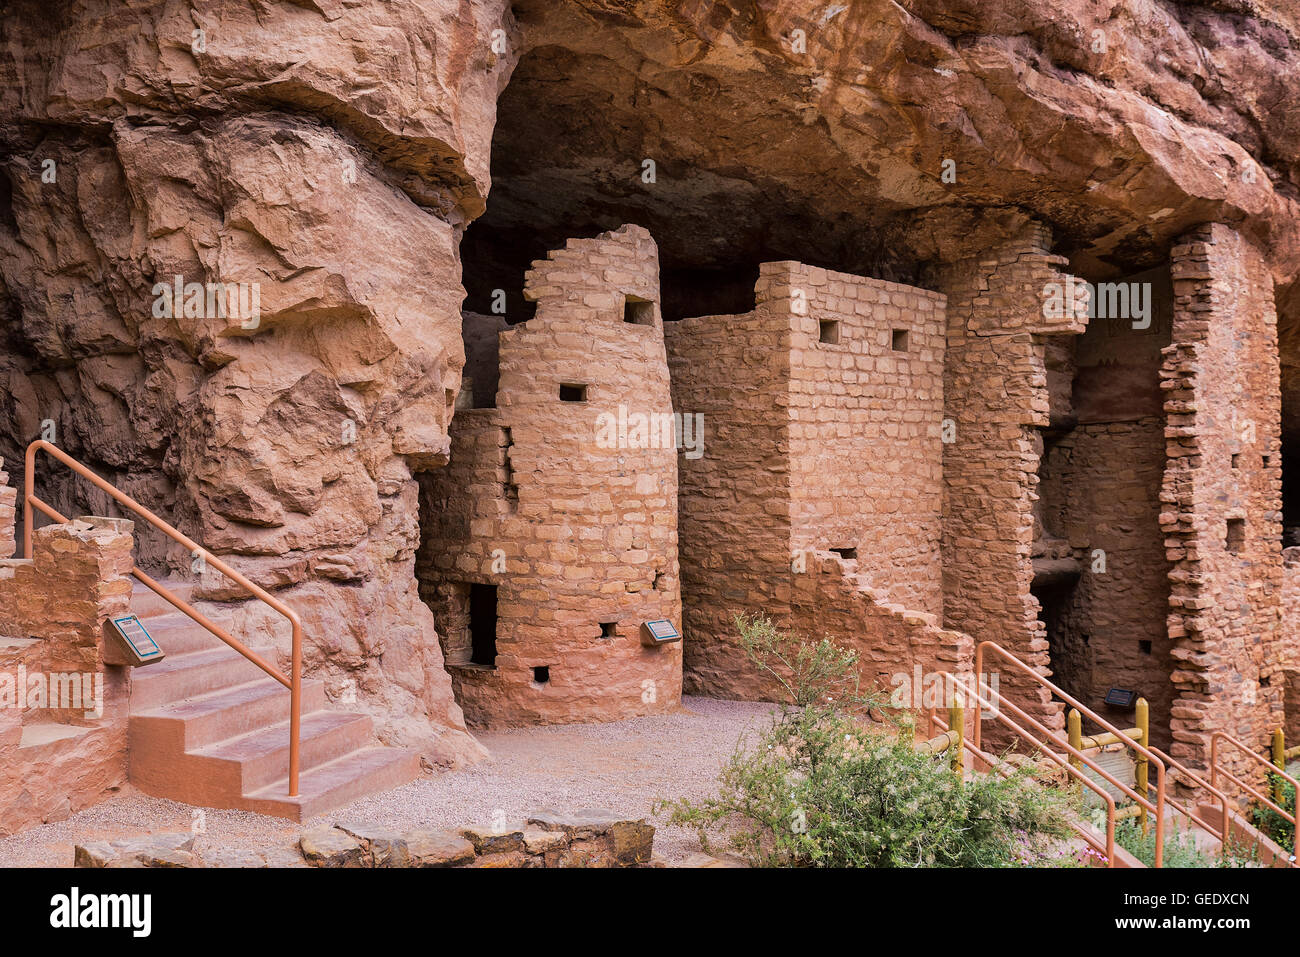 Manitou Cliff Dwellings degli Anasazi, nativi americani tribù indiana. Queste abitazioni sono state scavate nella soffice pietra arenaria rossa Foto Stock